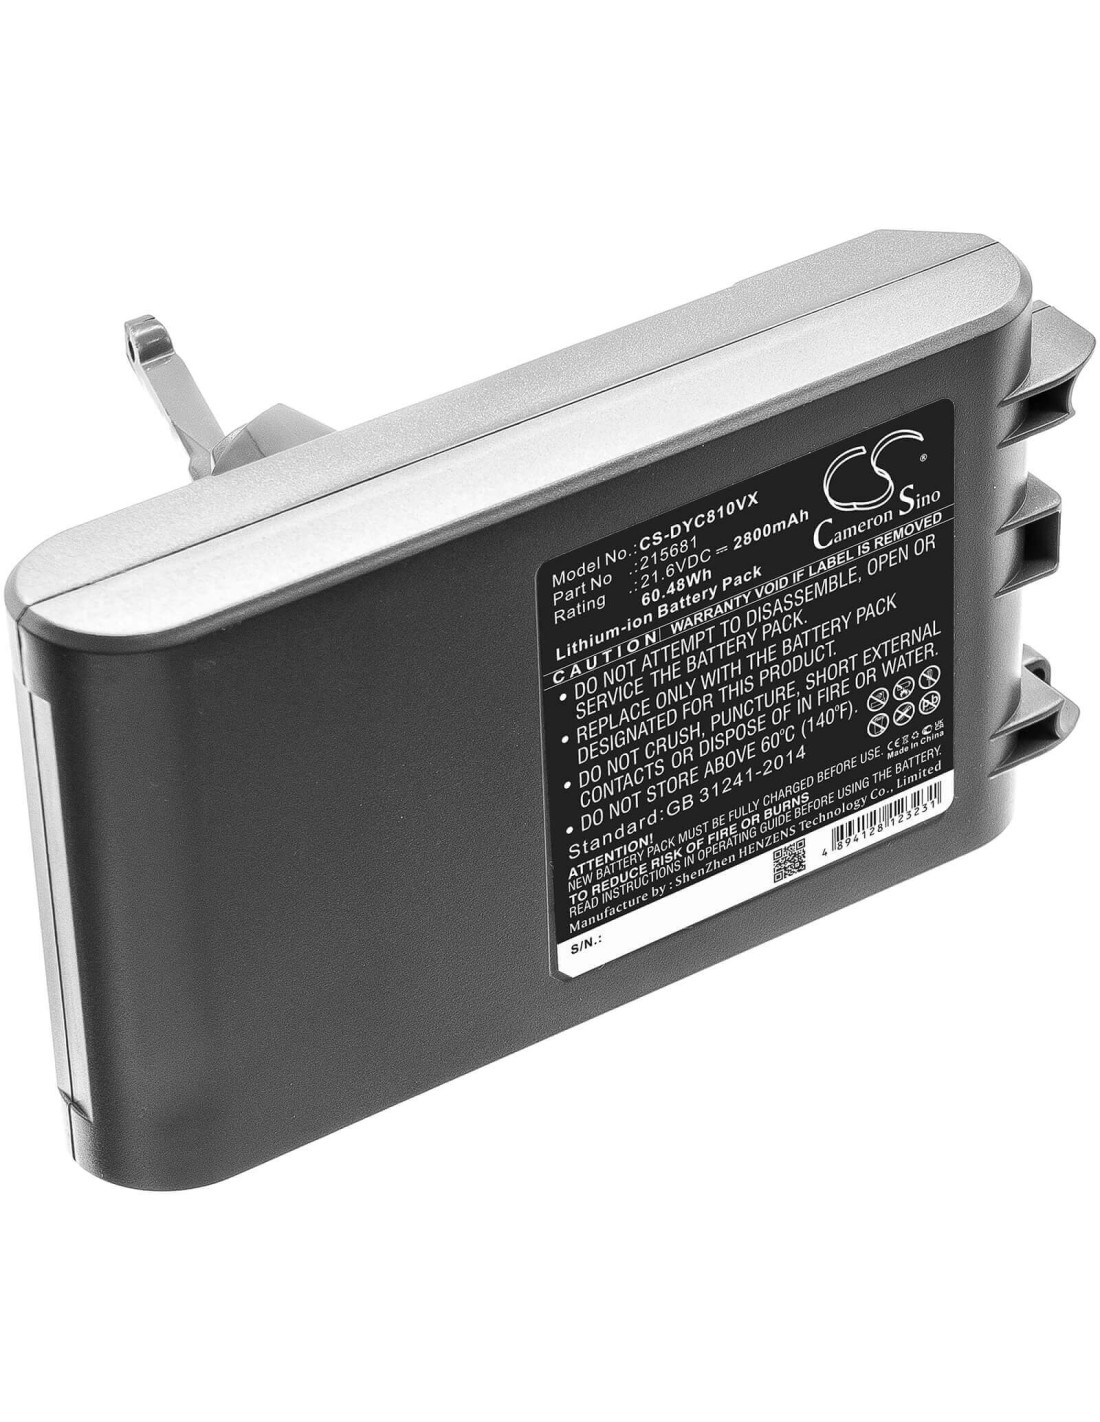 Battery for Dyson, Sv10, V8, V8 Absolute, V8 Absolute Cord-free 21.6V, 2800mAh - 60.48Wh